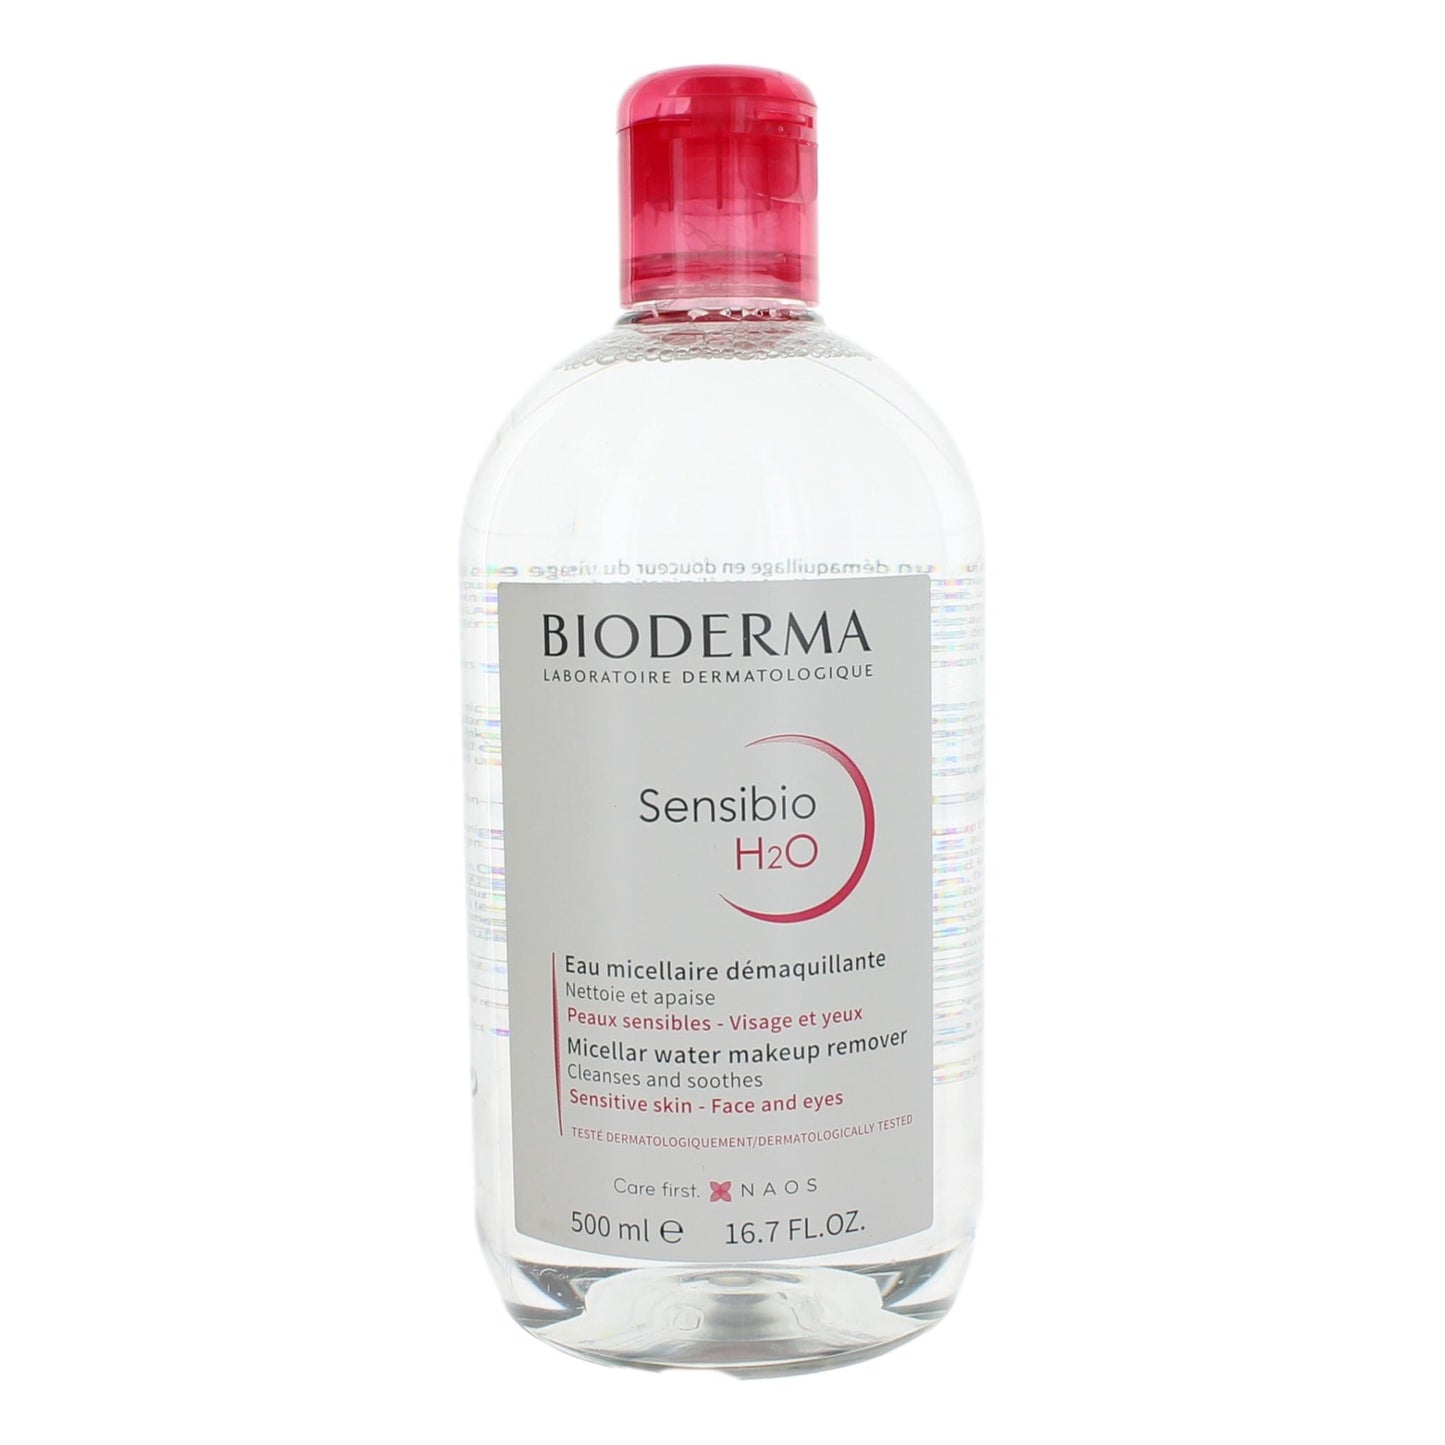 Bottle of Bioderma Sensibio H2O by Bioderma, 16.7 oz Micellar Water Makeup Remover